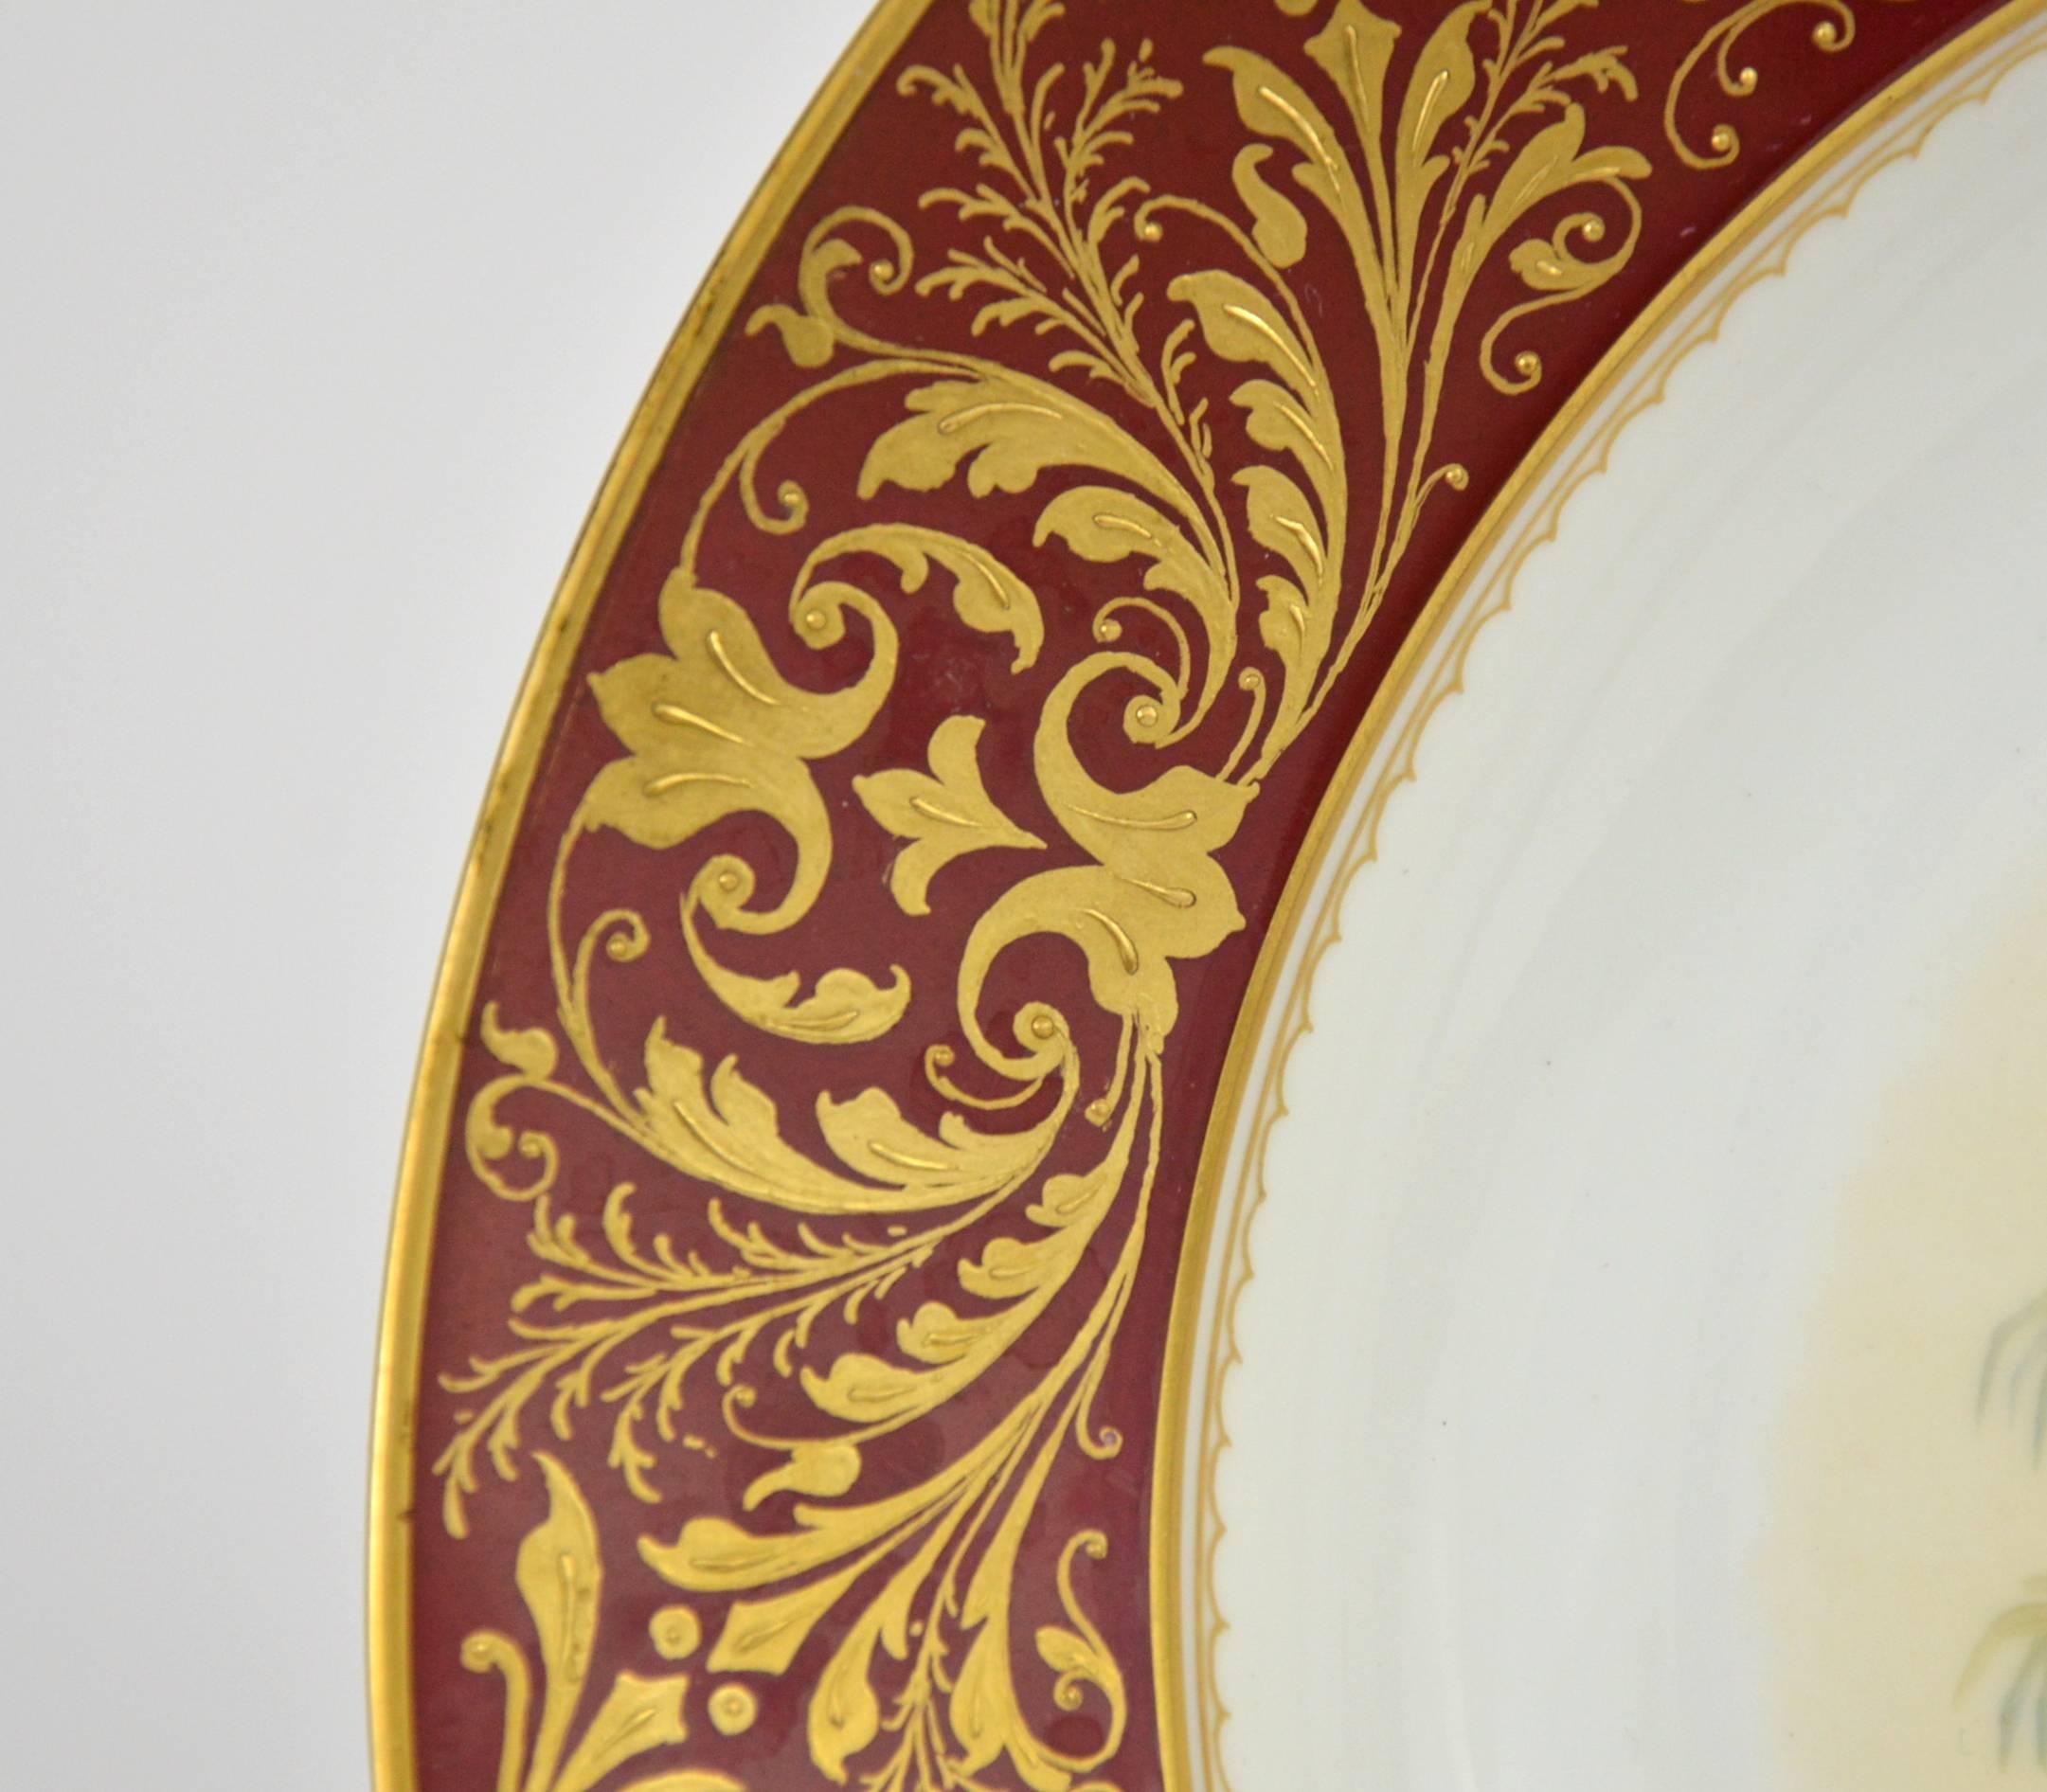 Late 19th Century Pair of Decorative Porcelain Plates, Mythological Subject Depicting Shiva